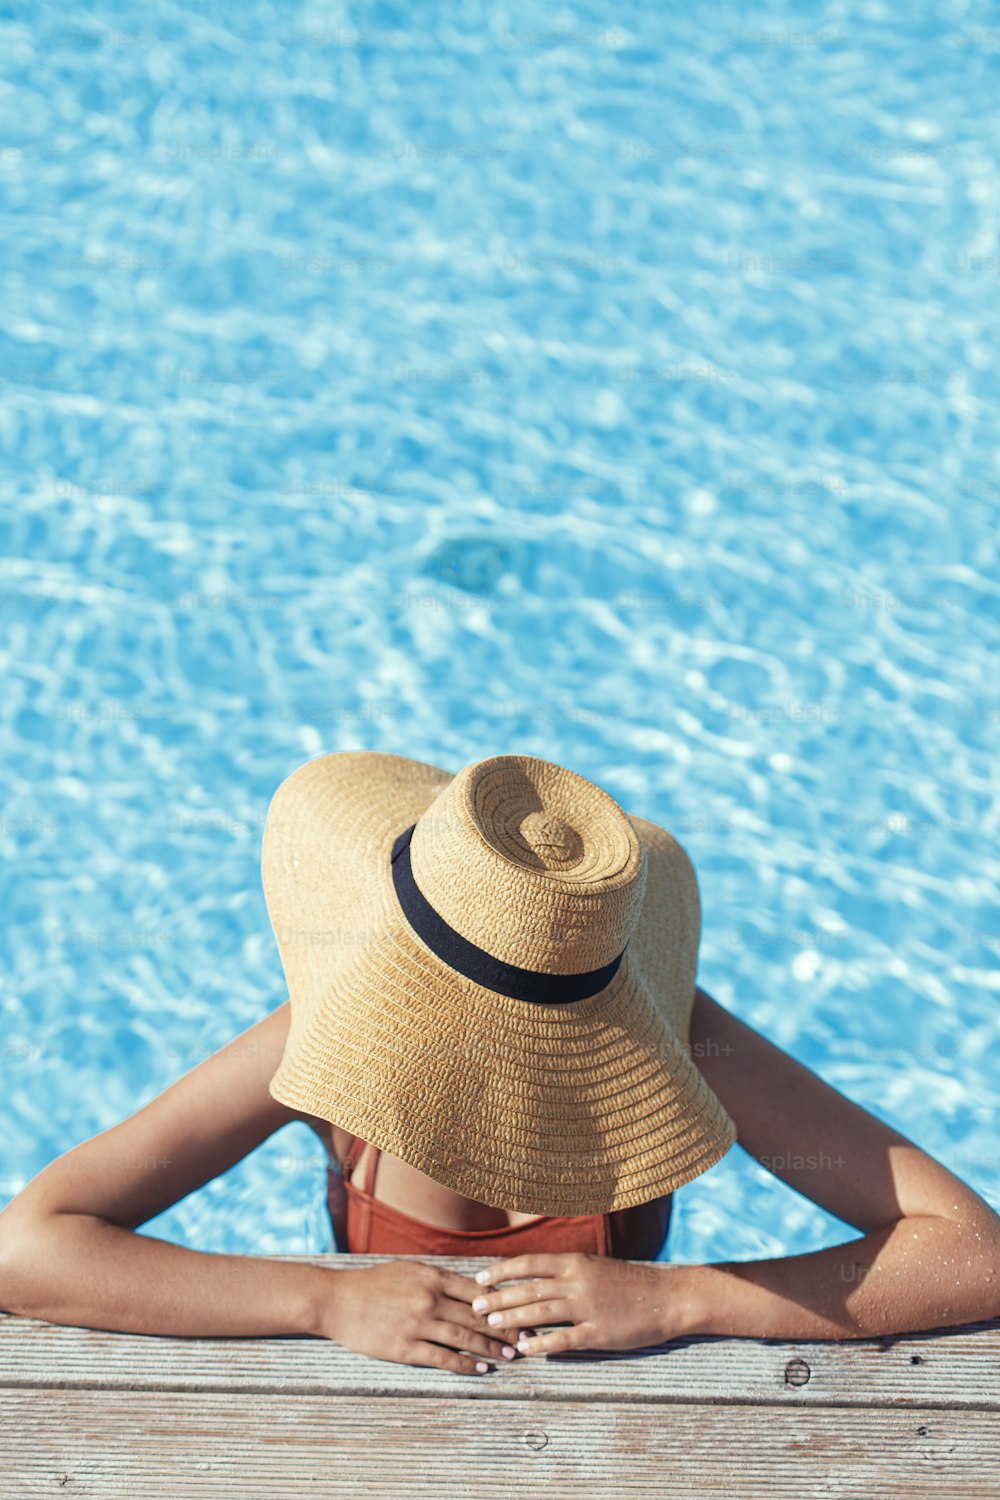 Bella donna in cappello che si rilassa al molo di legno della piscina in acqua, godendo delle vacanze estive in un resort tropicale. Giovane femmina magra che prende il sole sul bordo della piscina, vista sopra. Vacanze e viaggi